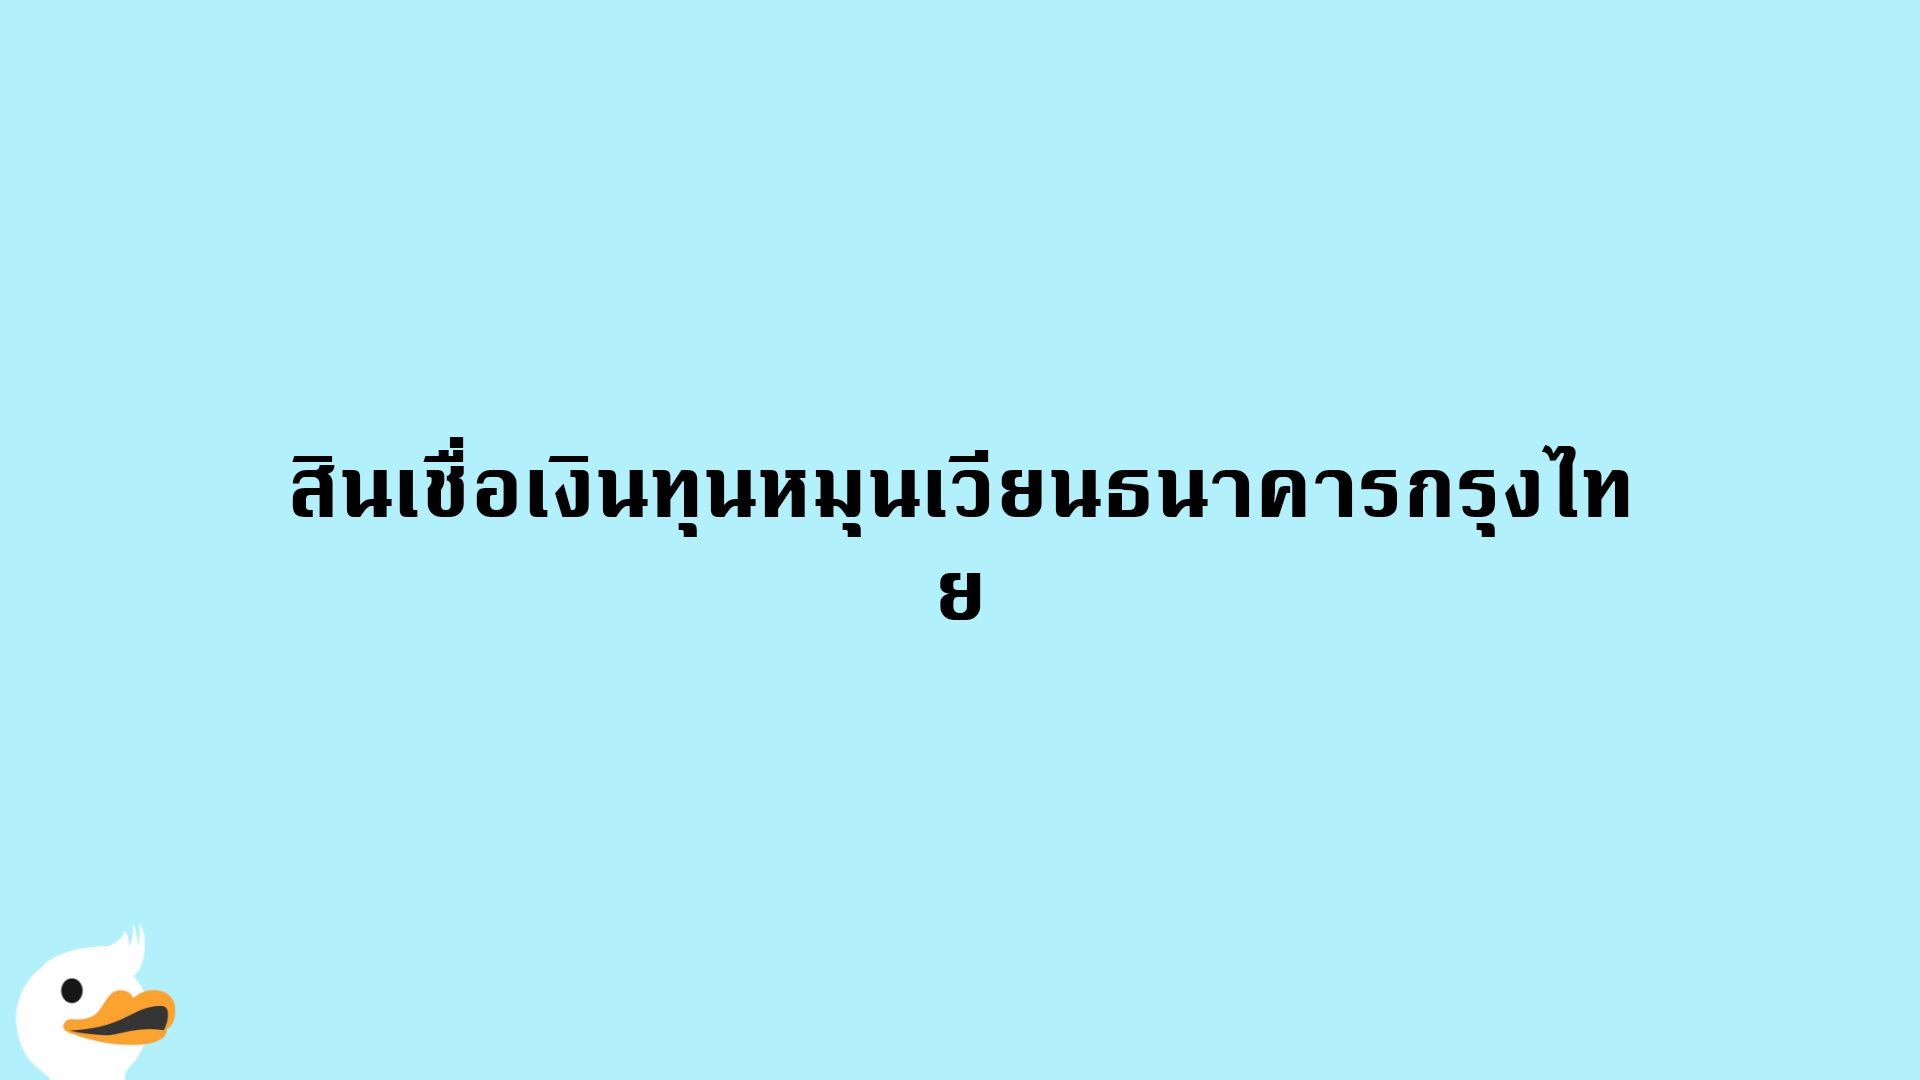 สินเชื่อเงินทุนหมุนเวียนธนาคารกรุงไทย